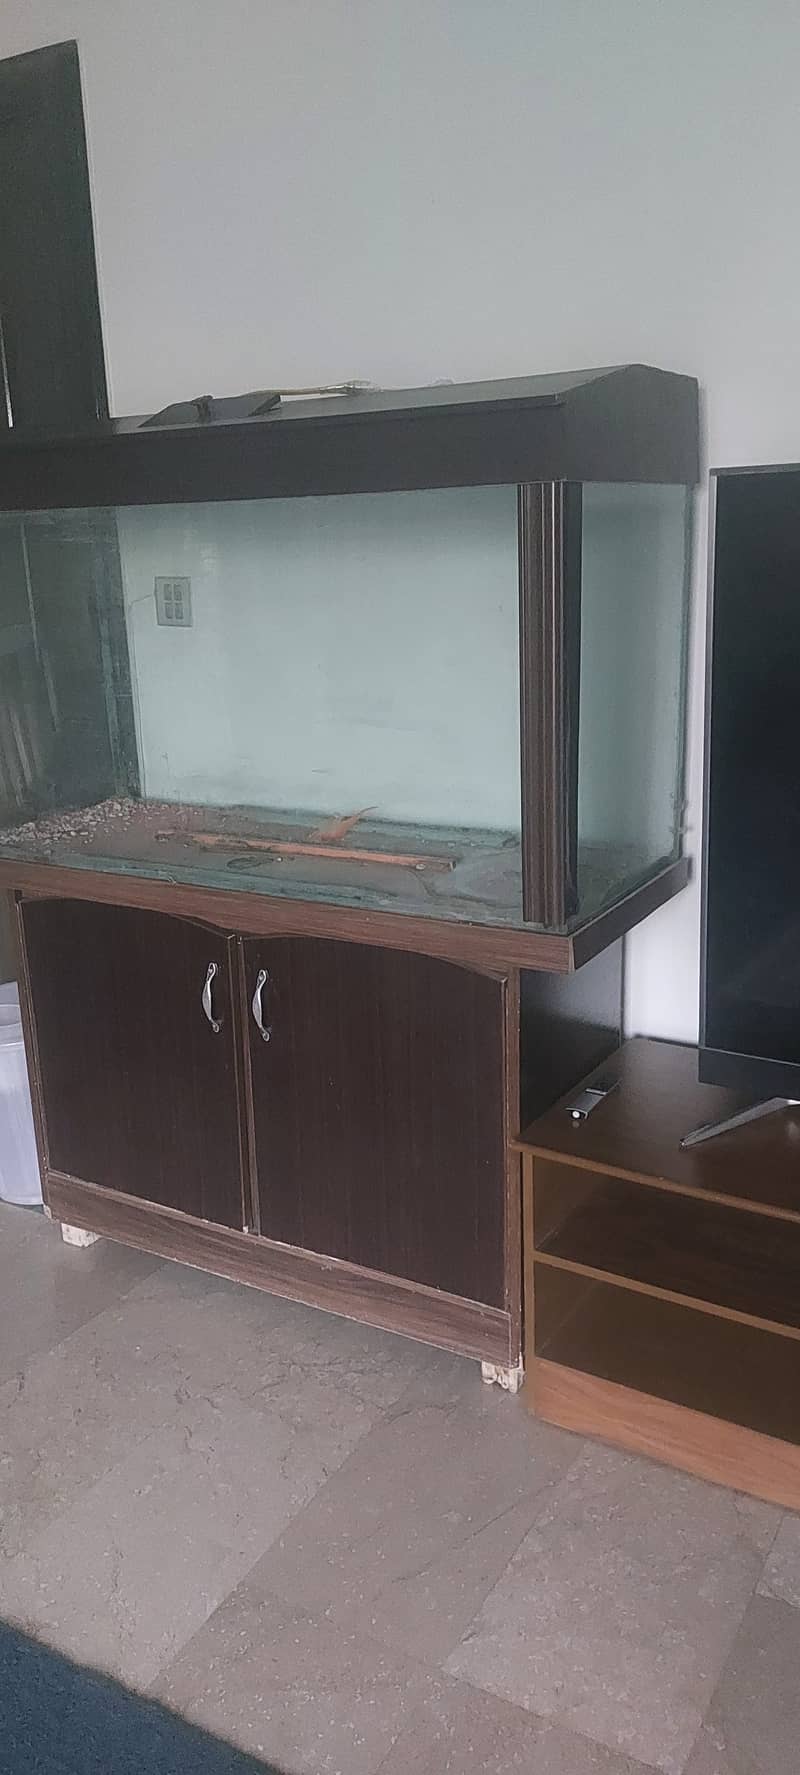 4 ft aquarium for urgent sale 3